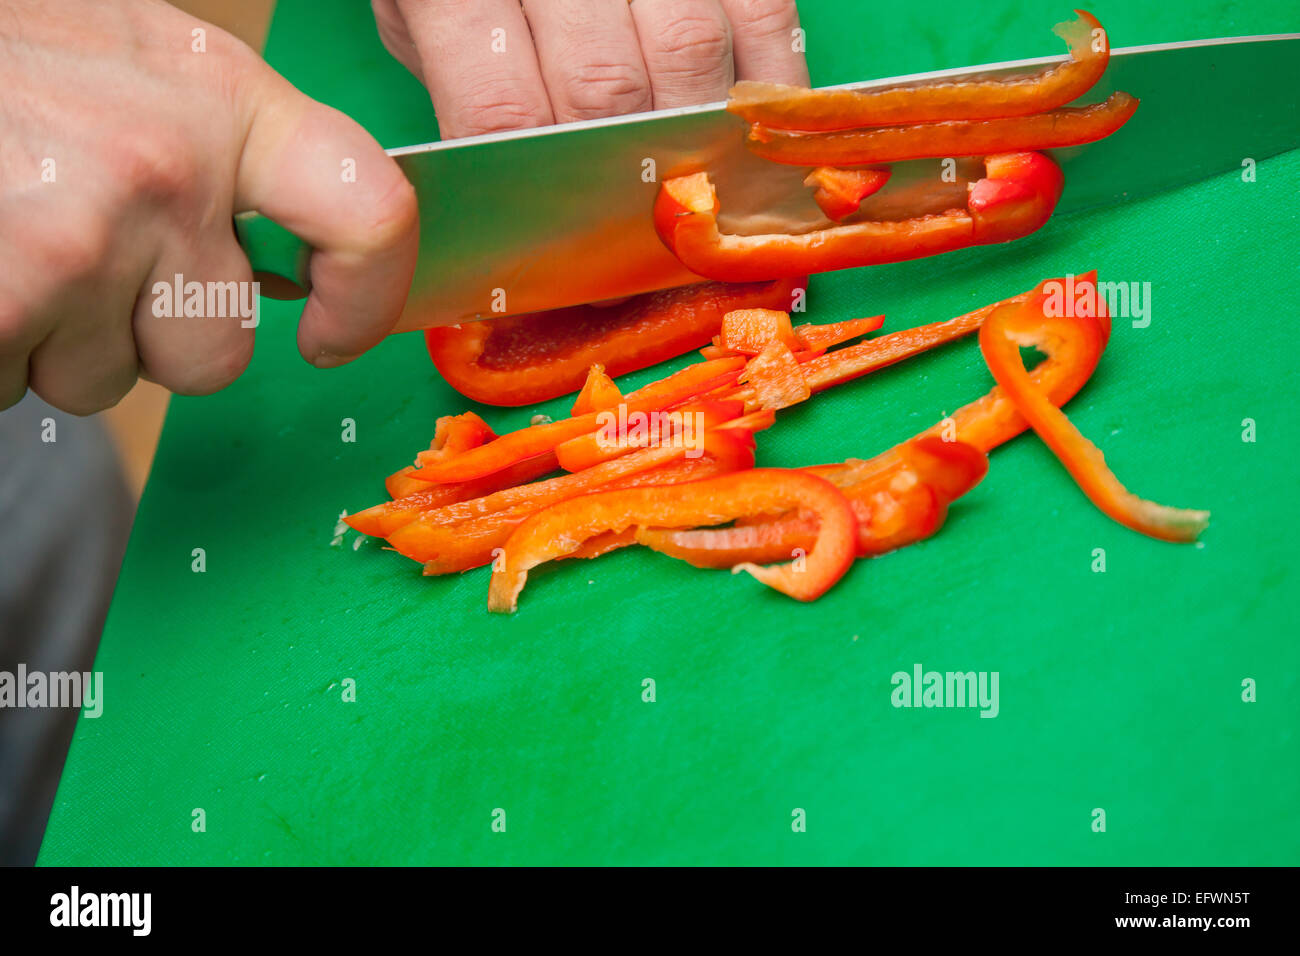 Zubereitung von Speisen - eine rote Paprika schneiden Stockfoto